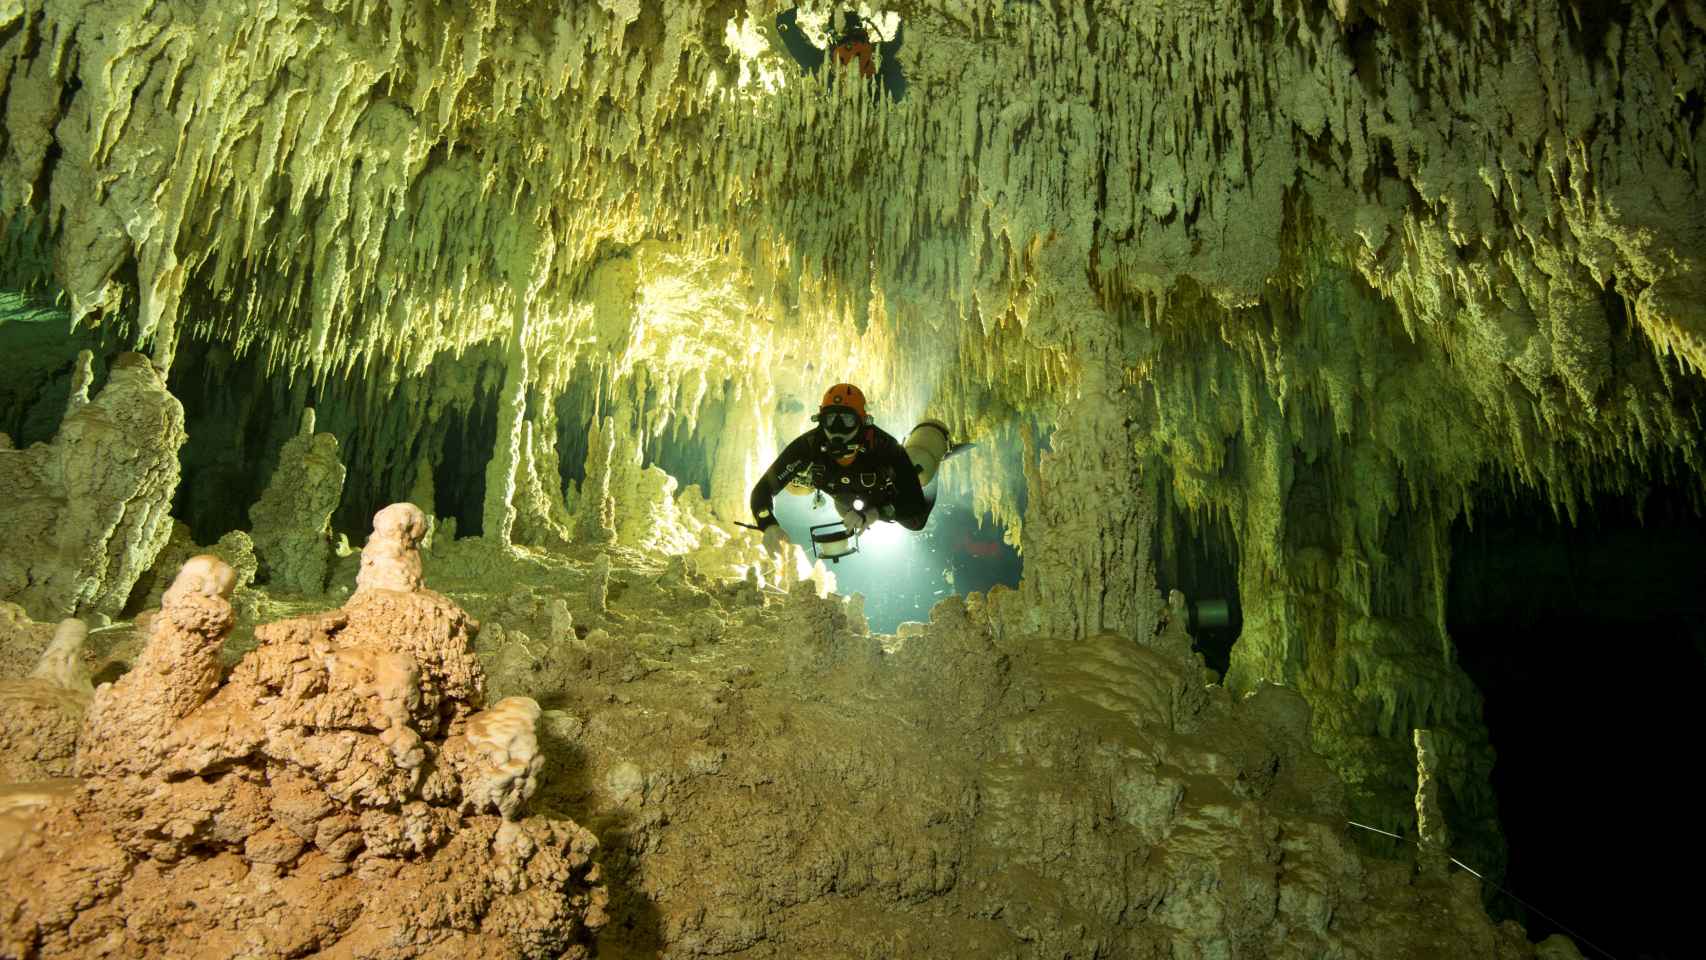 La cueva de Sac Atum, cerca de Tulum en Yucatán, México, ha sido descrita como el pasaje submarino más largo del mundo. Según sus descubridores, estas conexiones subterráneas y submarinas eran consideradas sagradas por los mayas e influenciaron su civilización.